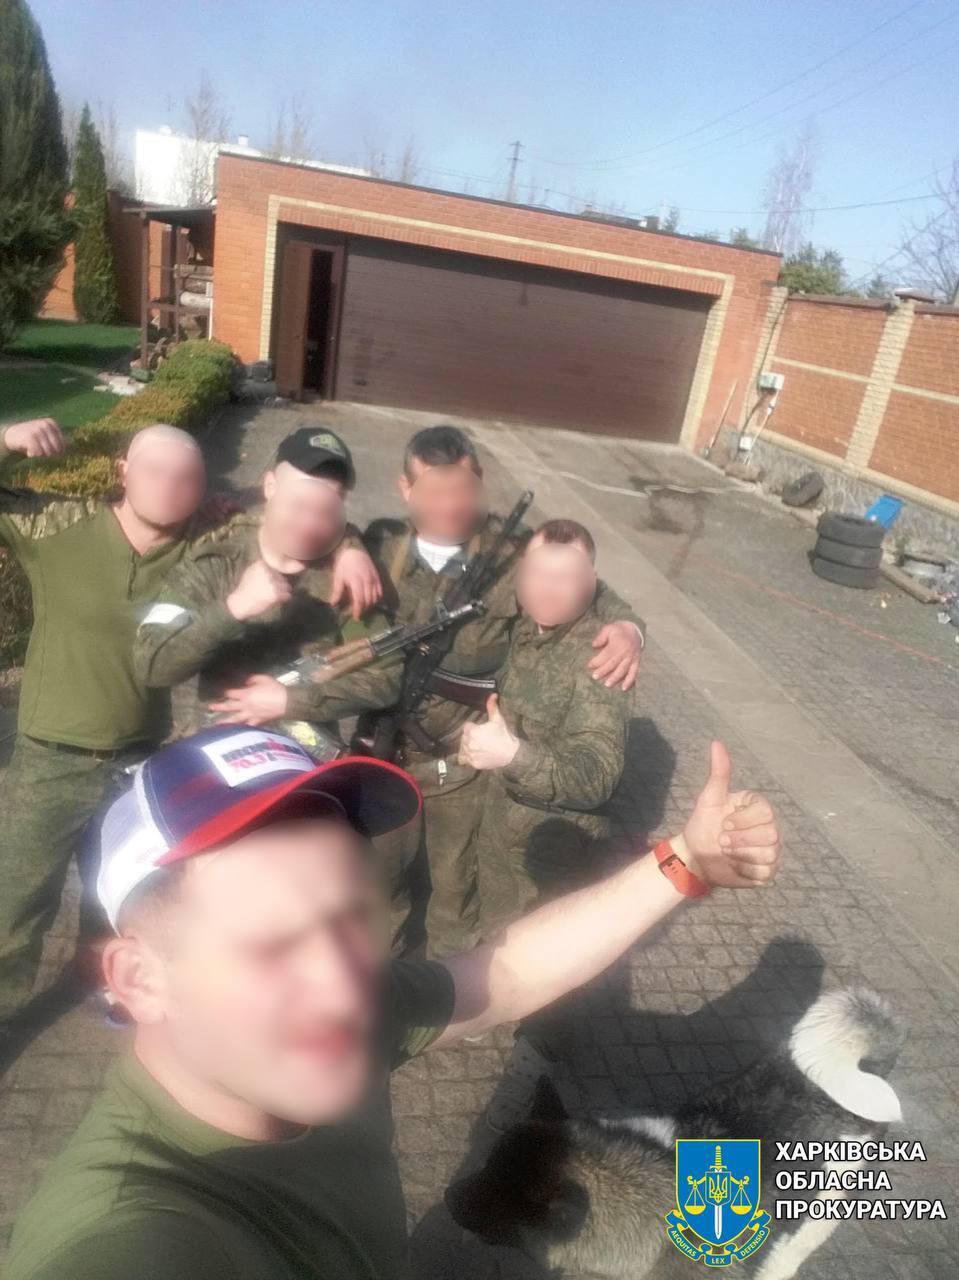 Делали селфи на ворованные телефоны прямо в доме: девяти российским оккупантам сообщили о подозрении. Фото